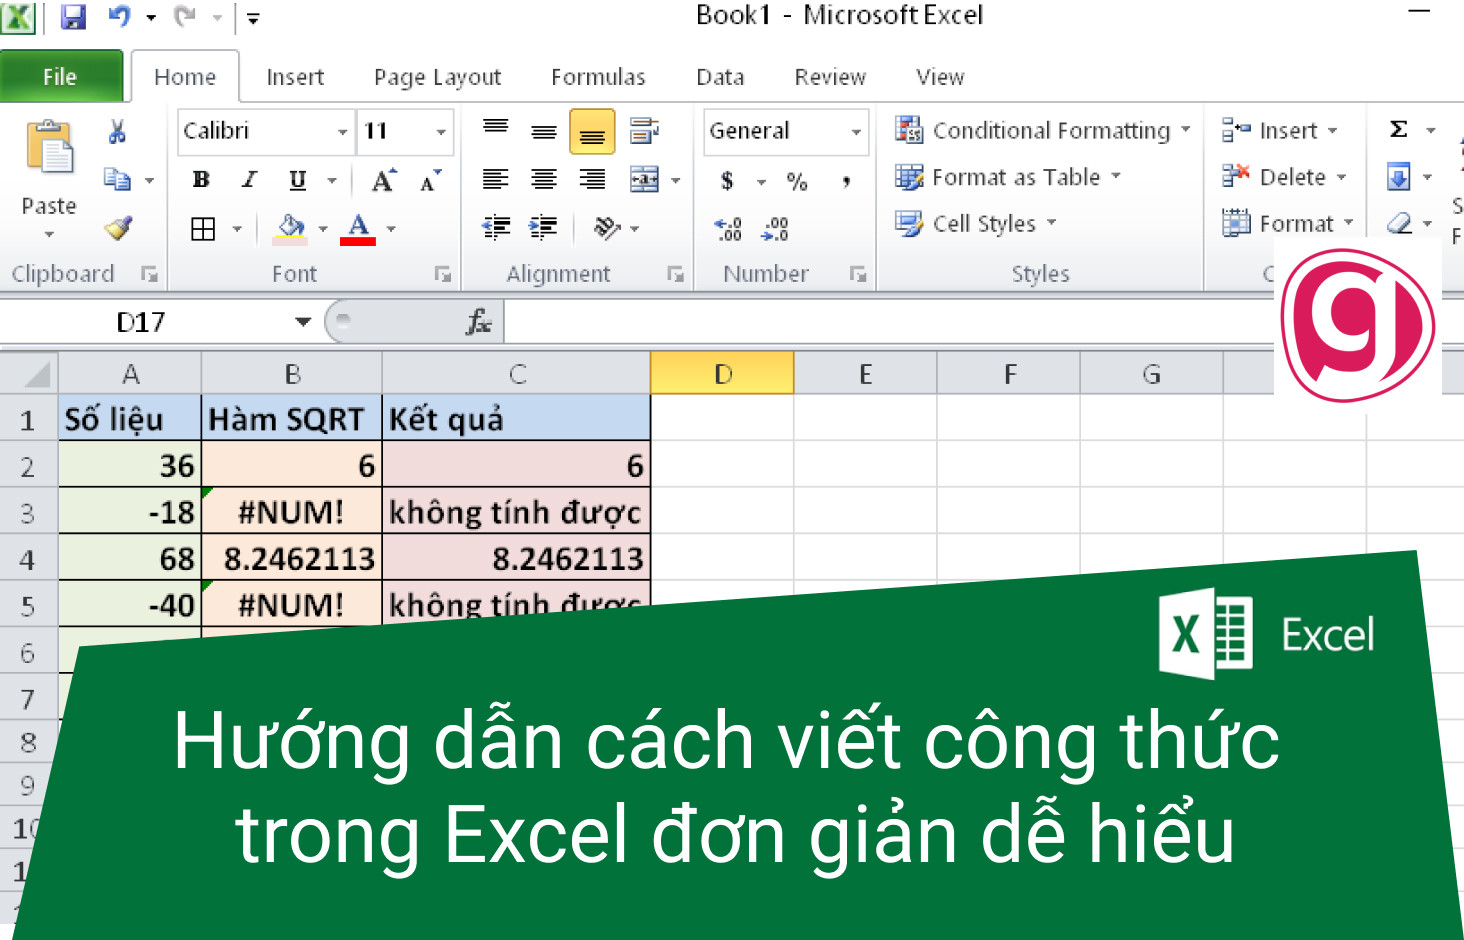 Hướng dẫn cách viết công thức trong Excel đơn giản dễ hiểu